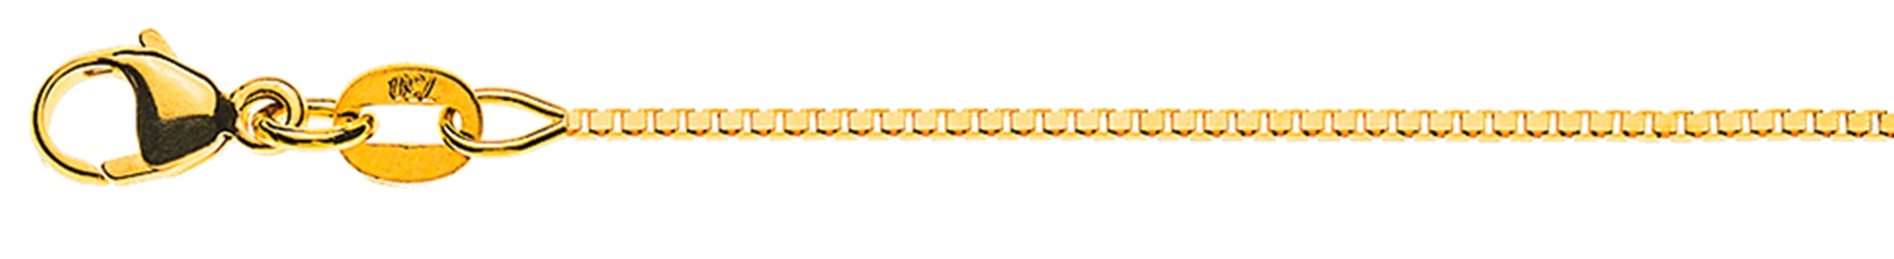 AURONOS Élégance Necklace yellow gold 14K Venetian chain diamond cut 40cm 0.9mm